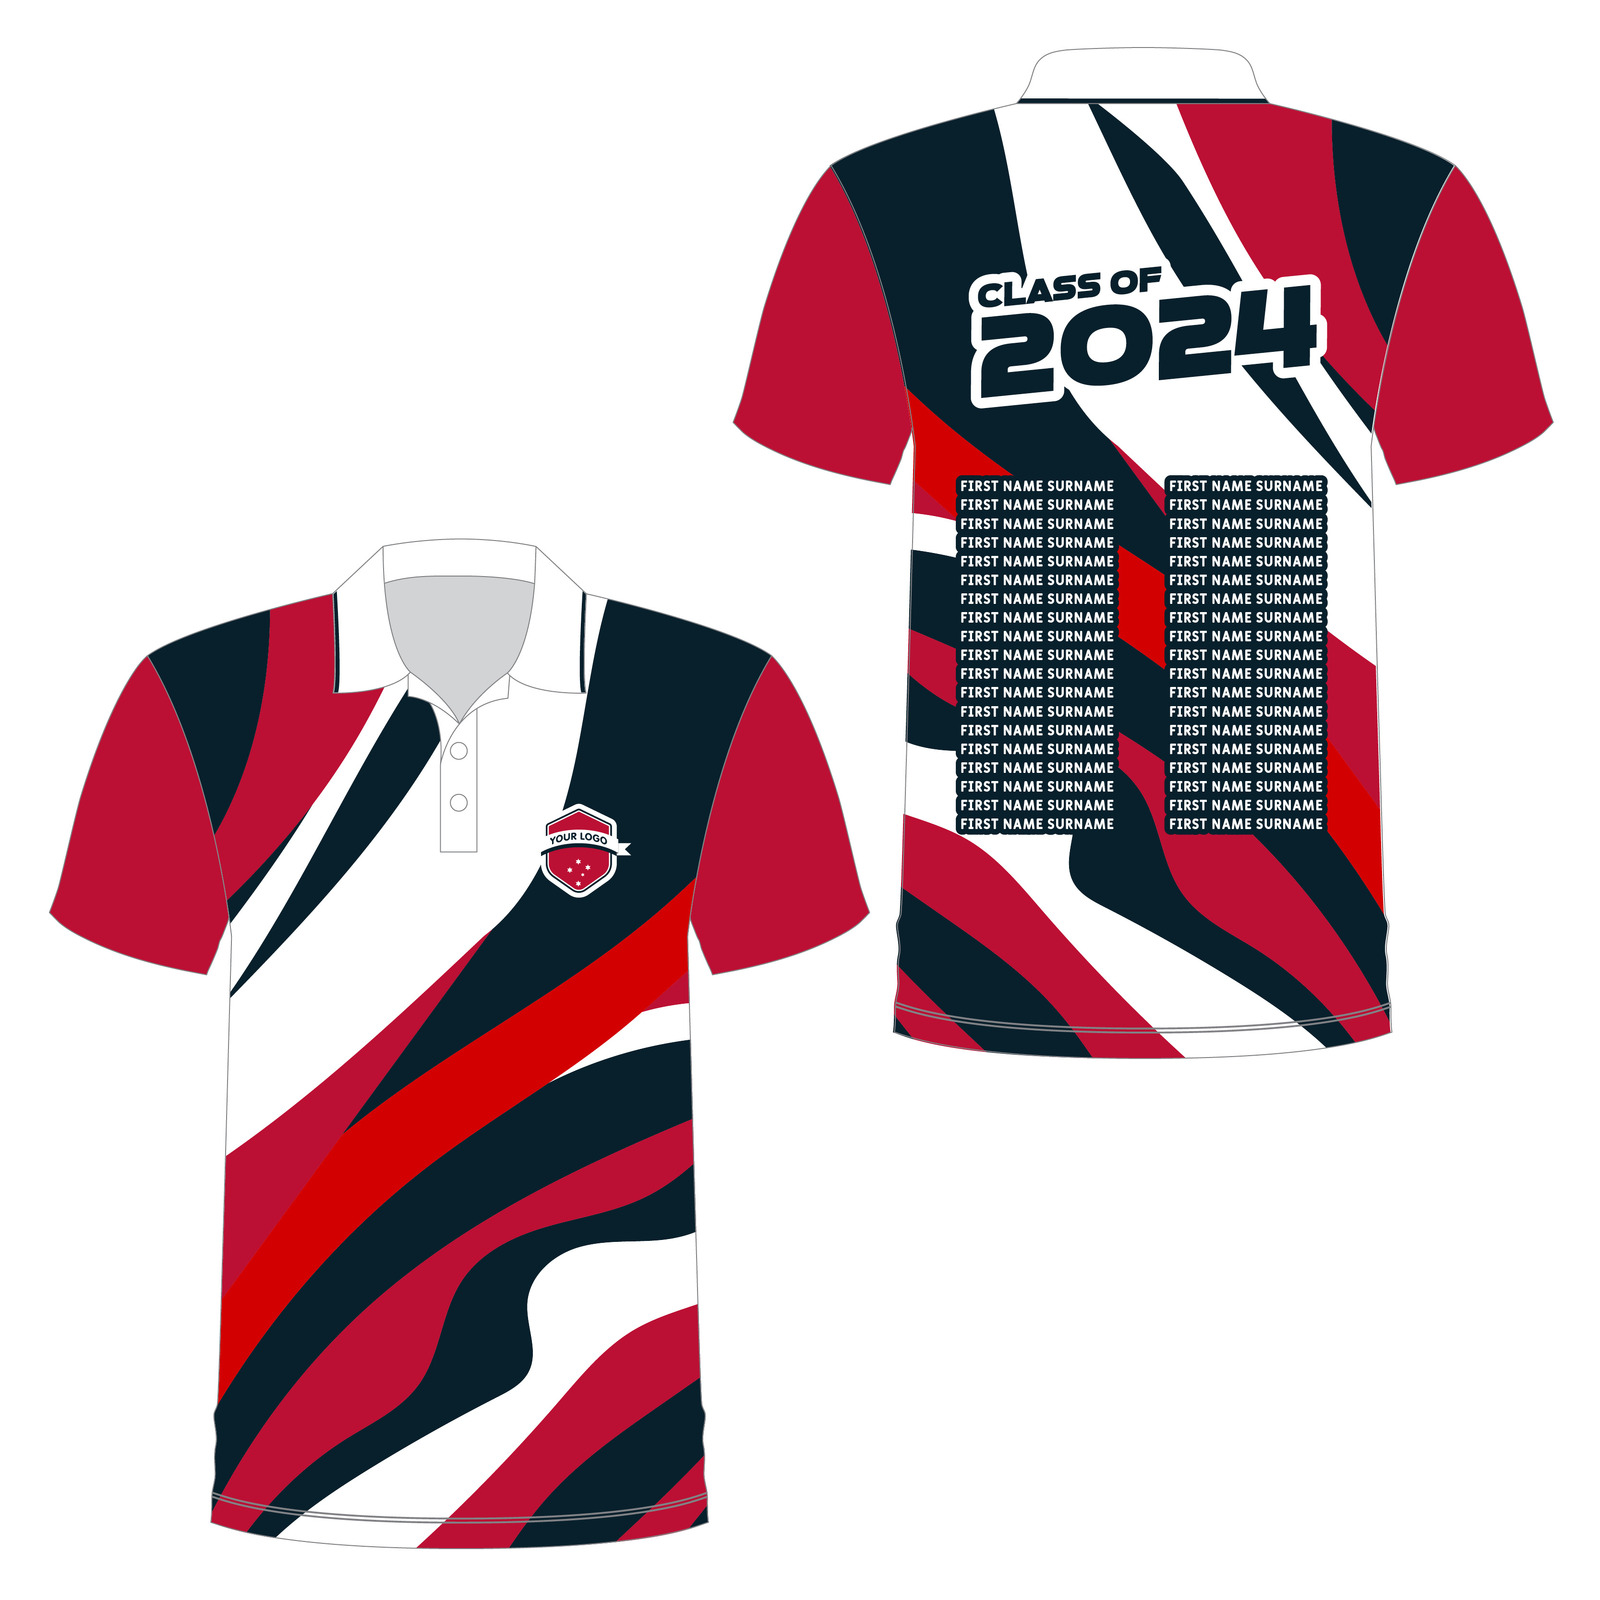 Customised Shirt - Le Zebra